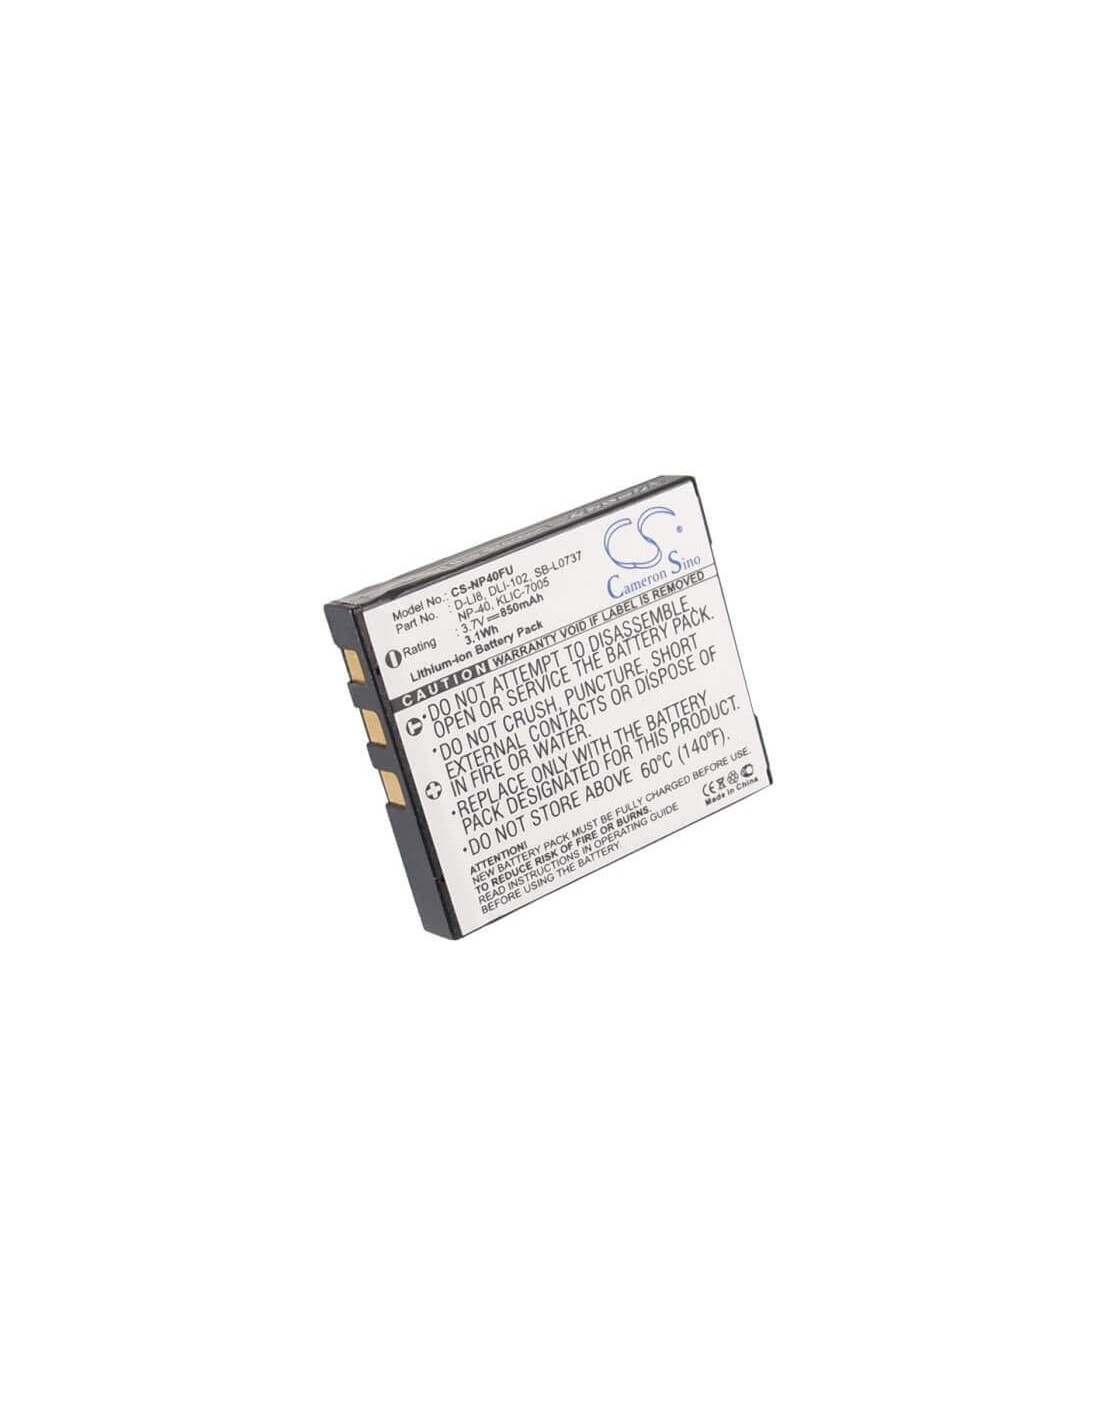 Battery for Pentax Optio A10, Optio A20, 3.7V, 850mAh - 3.15Wh